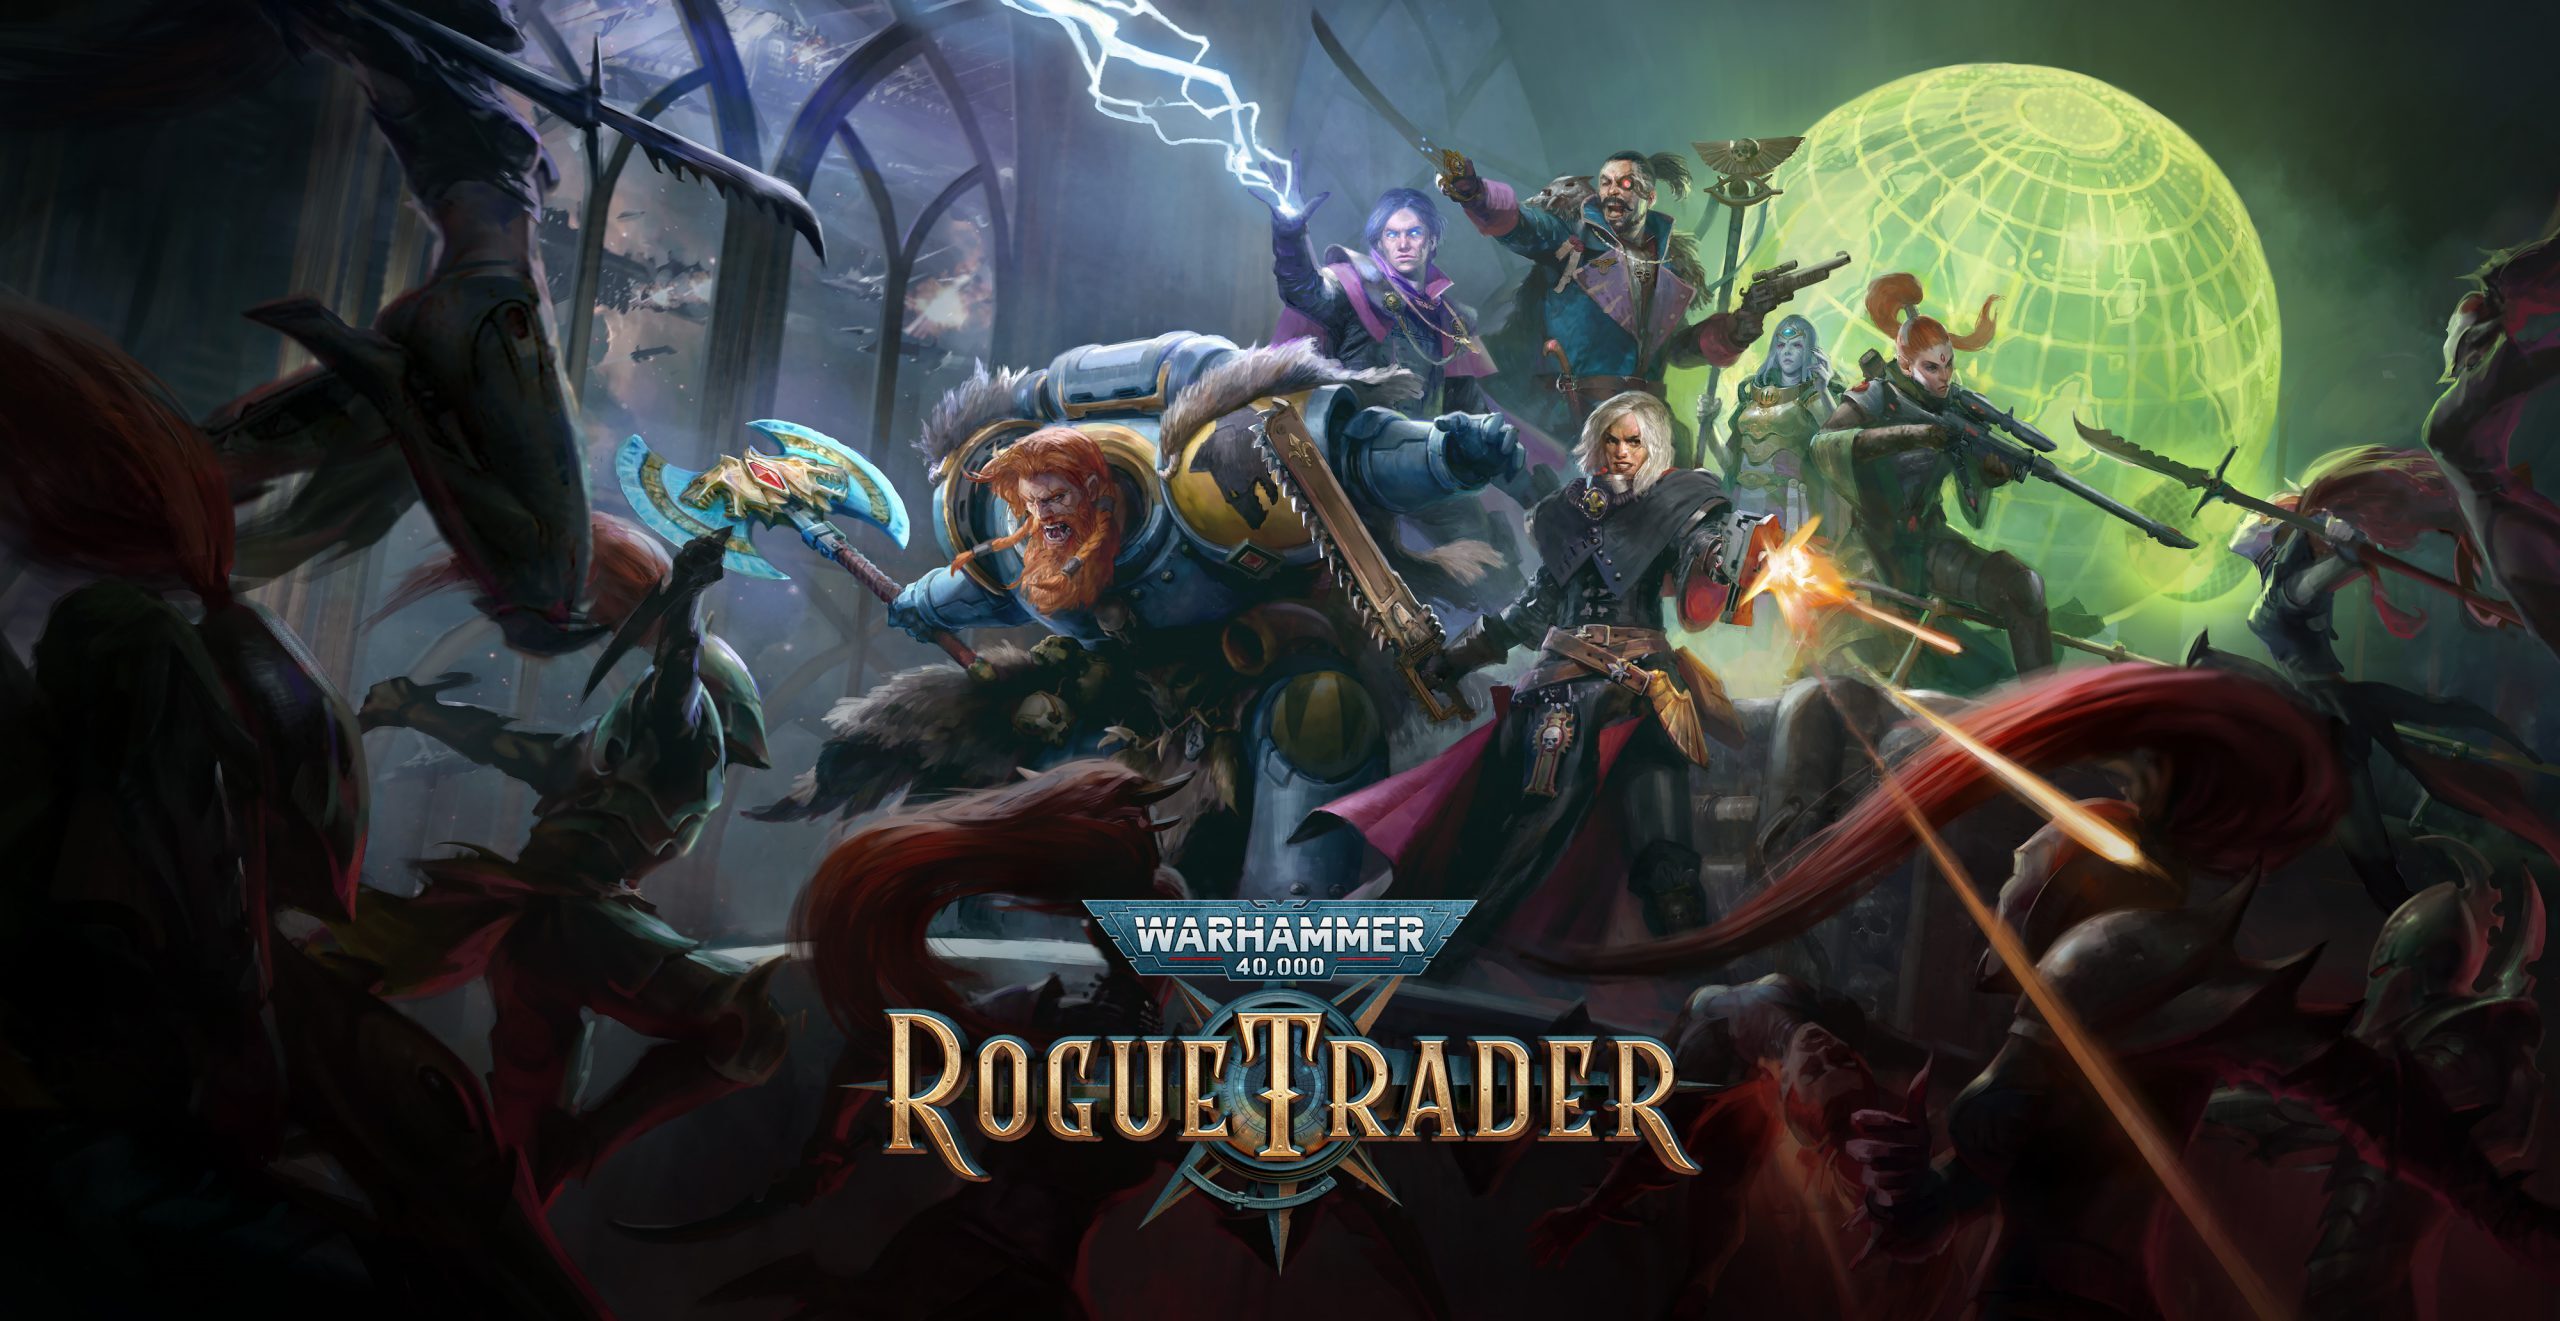 Warhammer 40,000: Rogue Trader uscirà il 7 dicembre